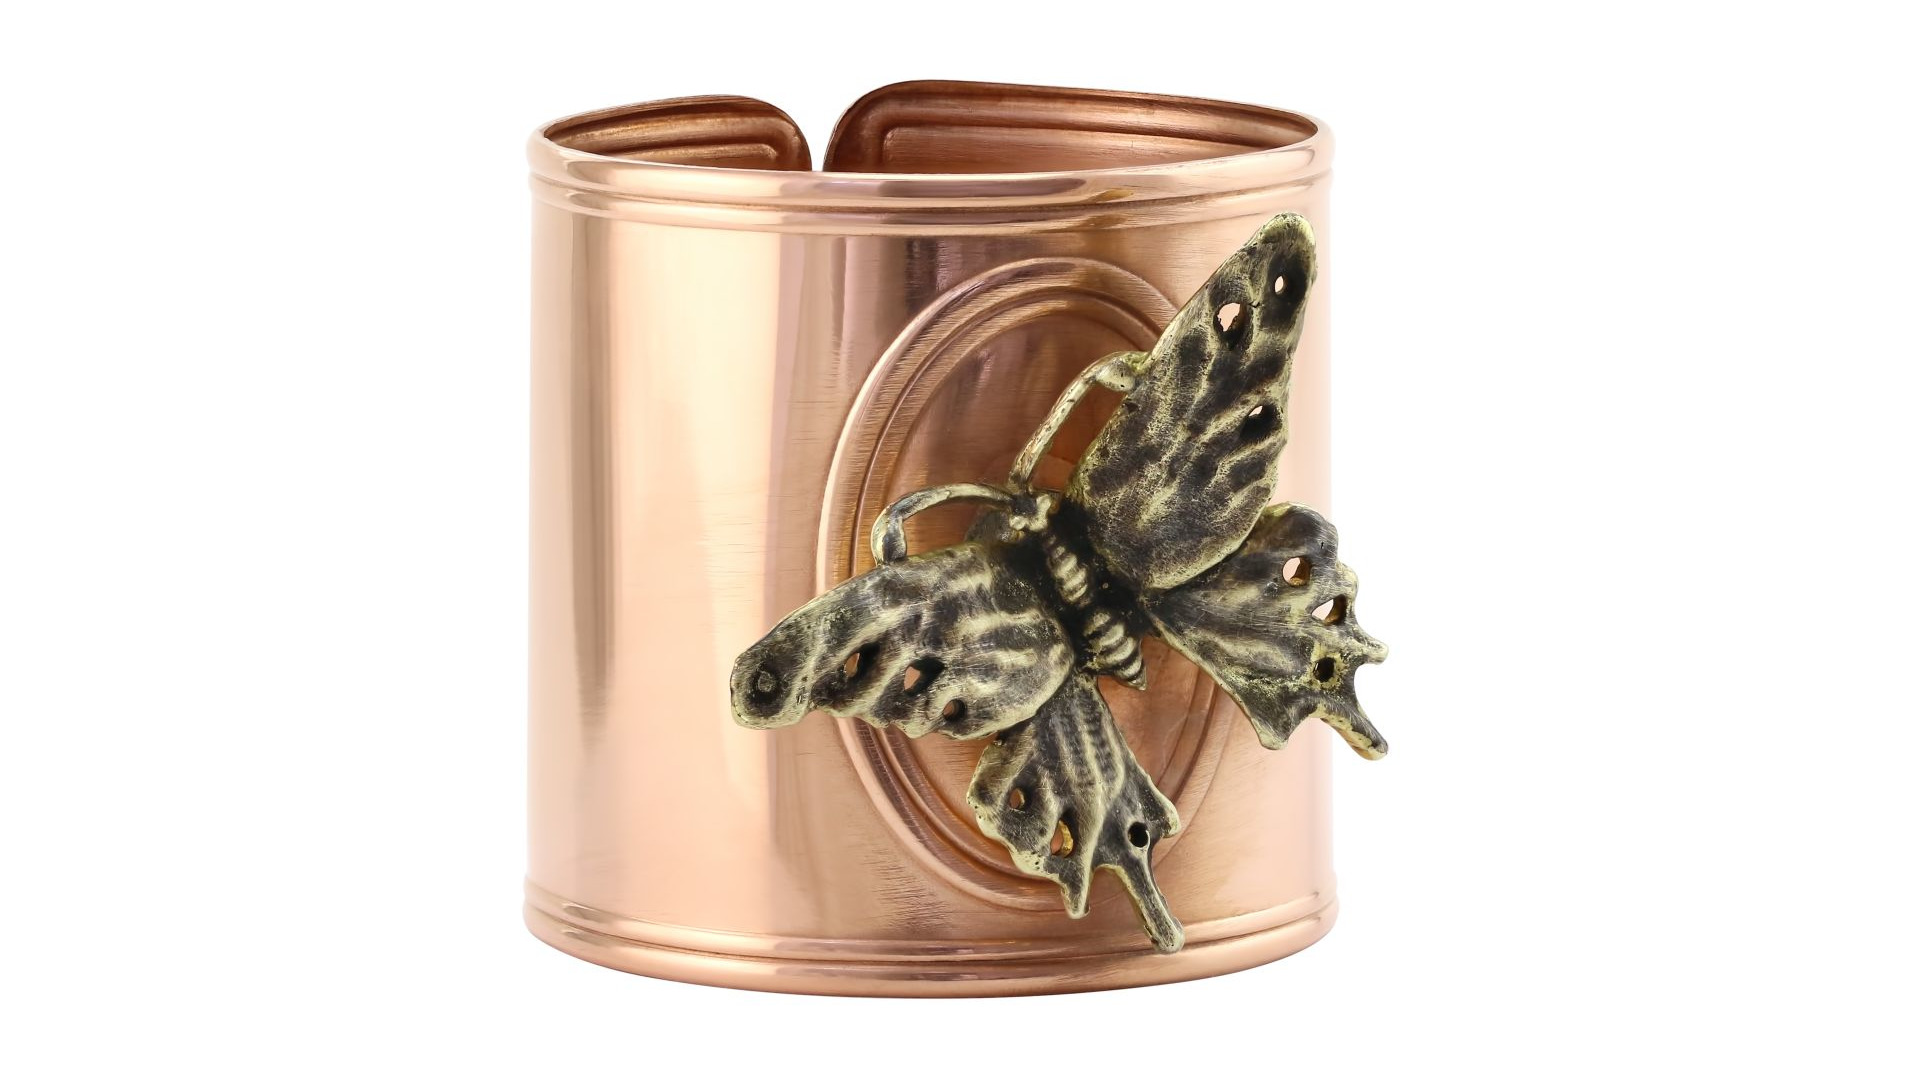 Кольцо для салфеток Кольчугинский мельхиор Бабочка с чернью 4 см, медь